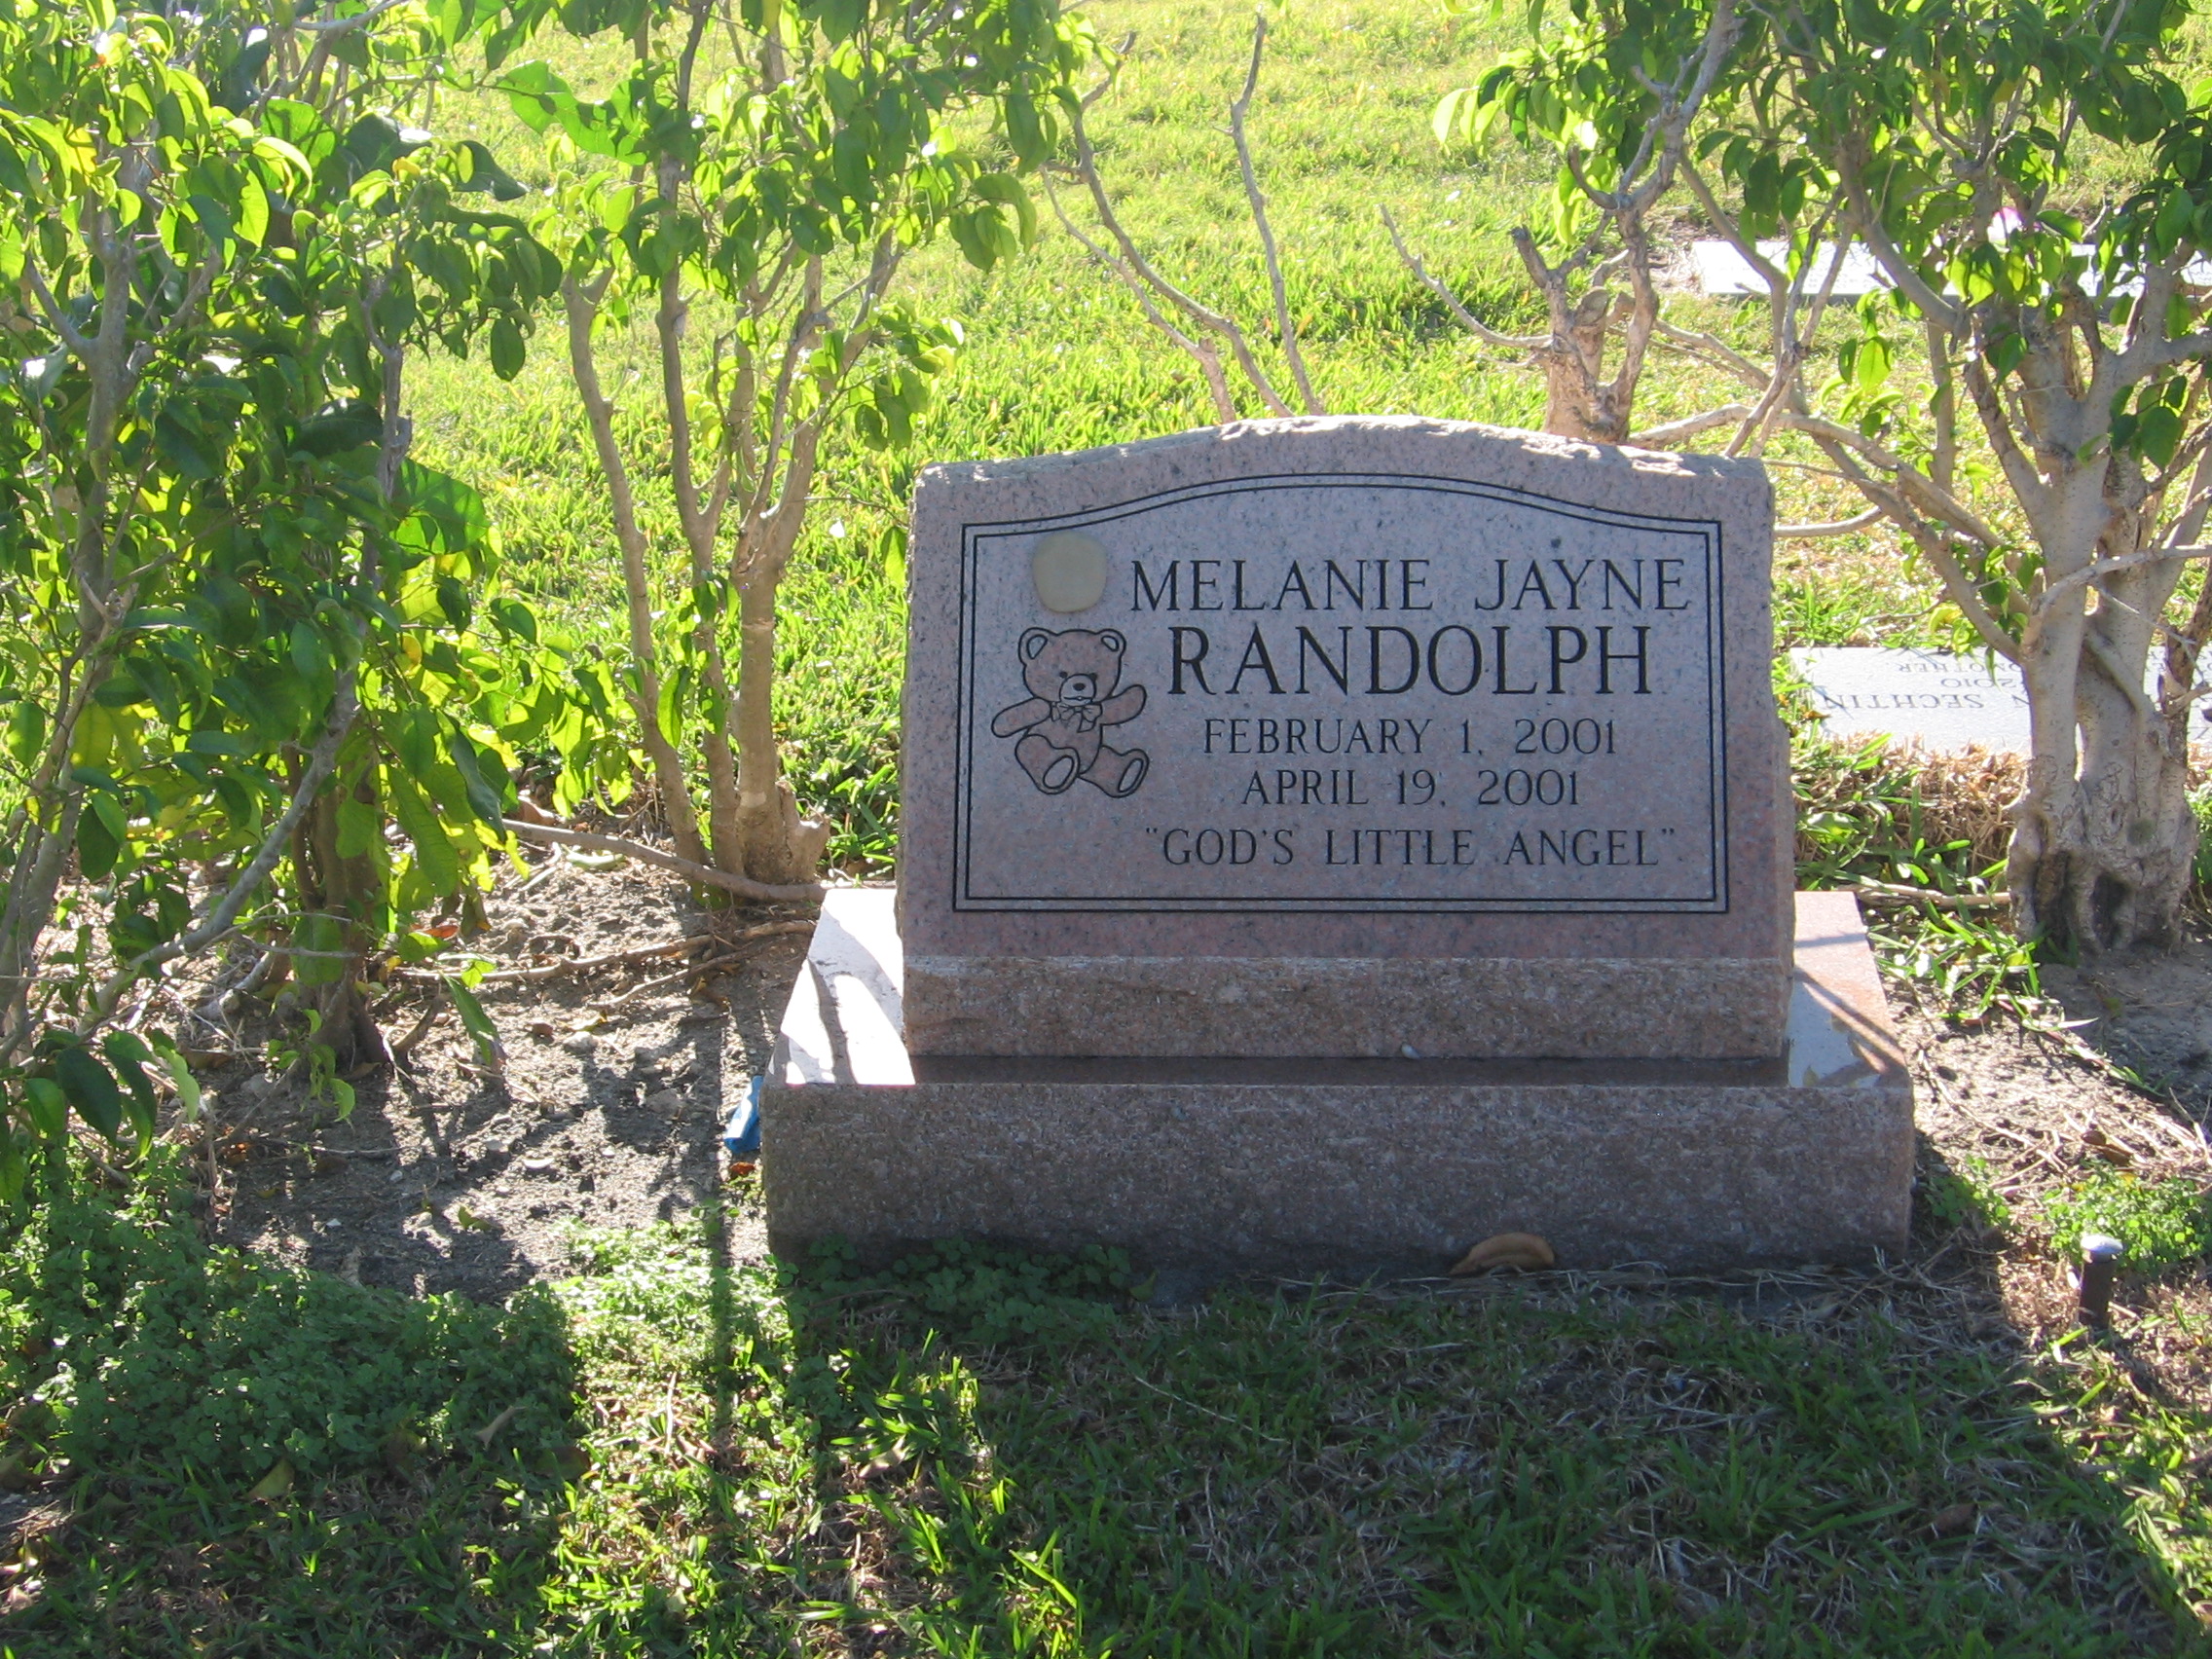 Melanie Jayne Randolph